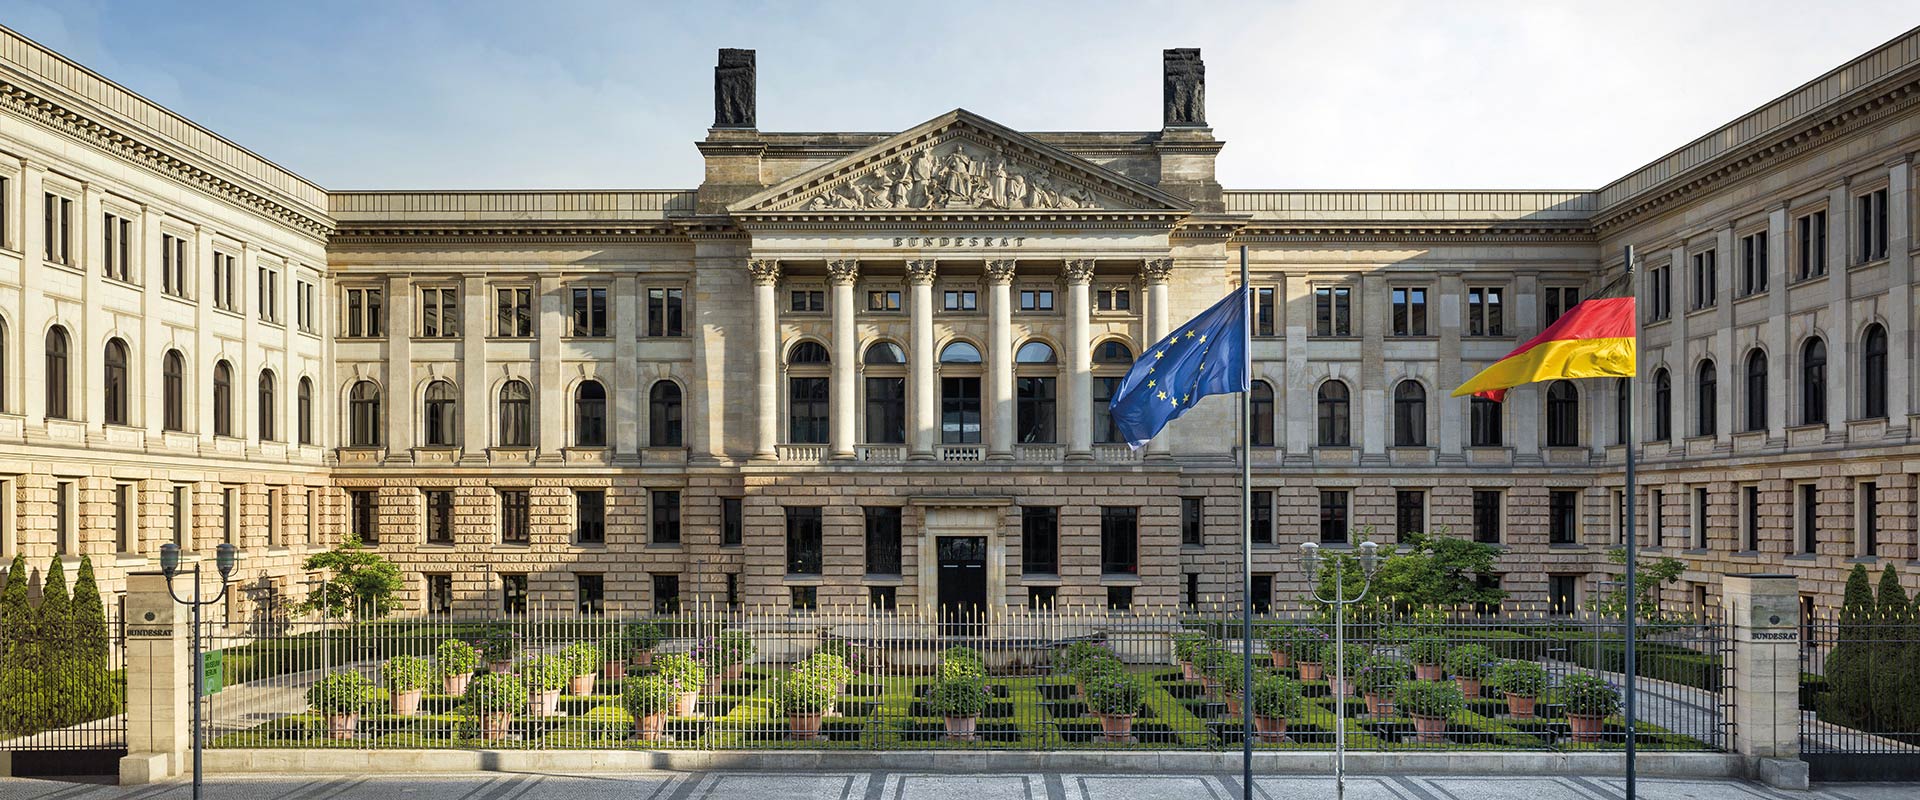 2019 柏林 联邦议院 两欧纪念币(德国联邦